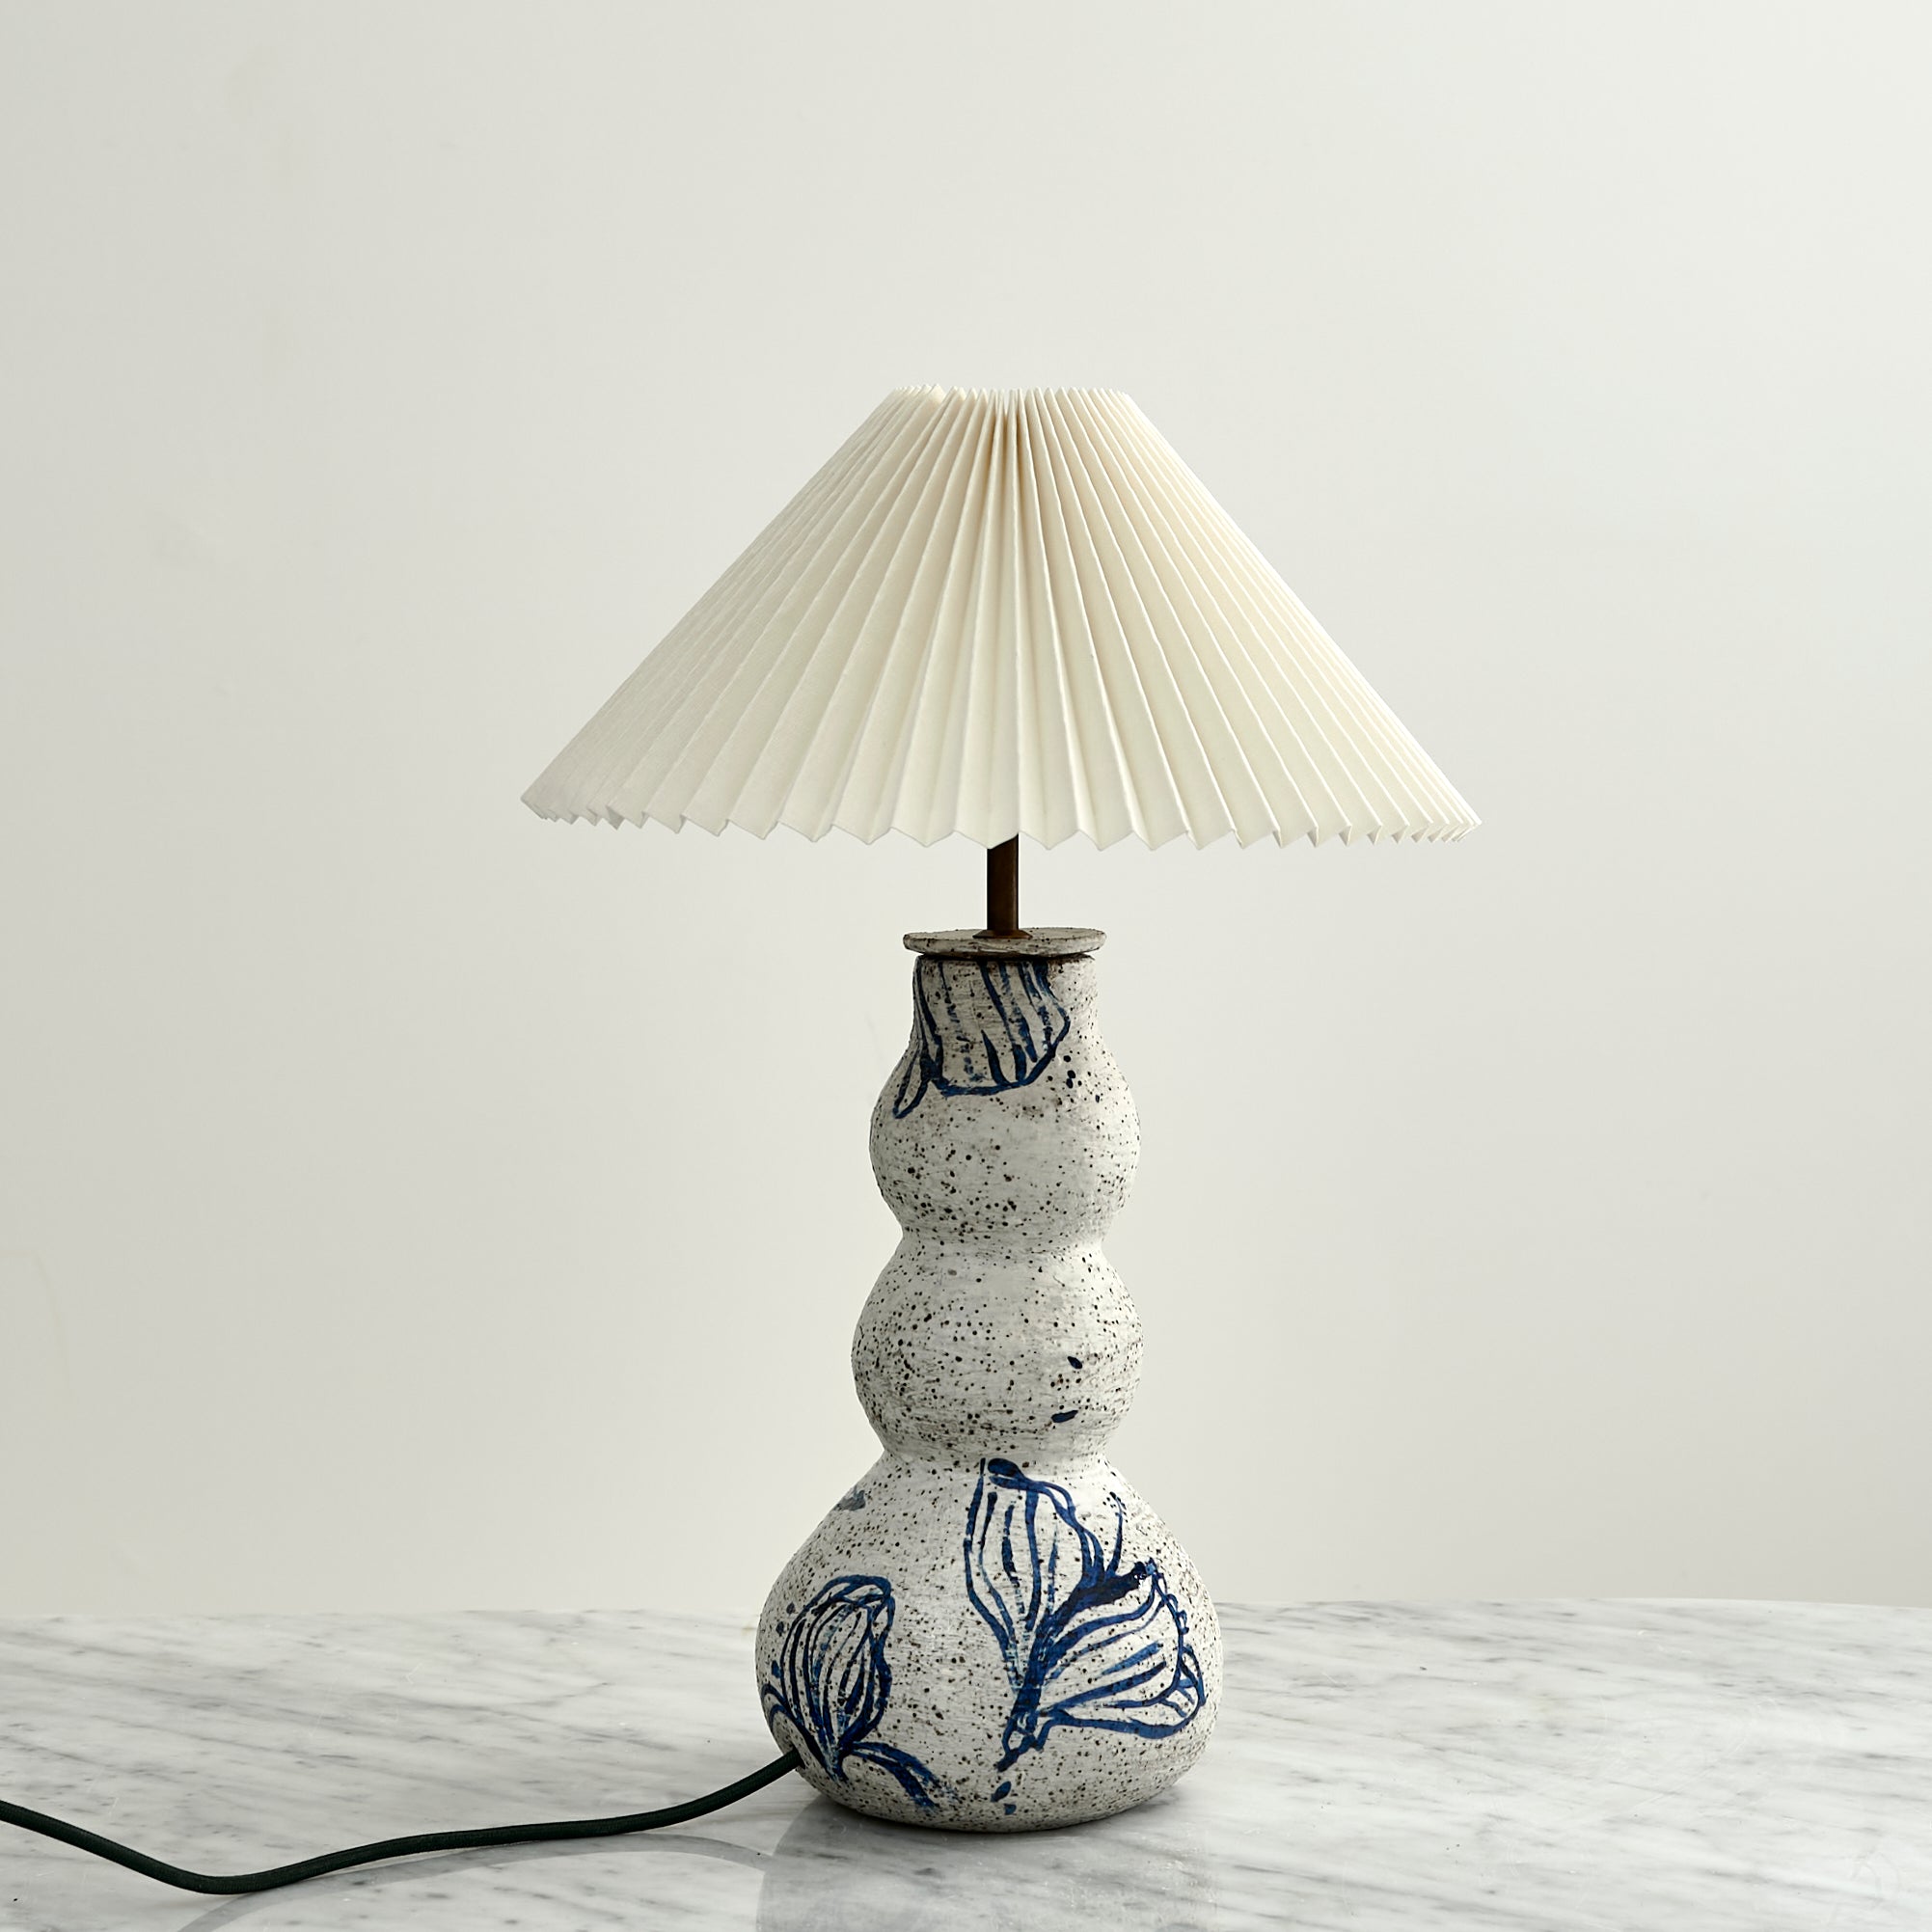 Lamp No. 12